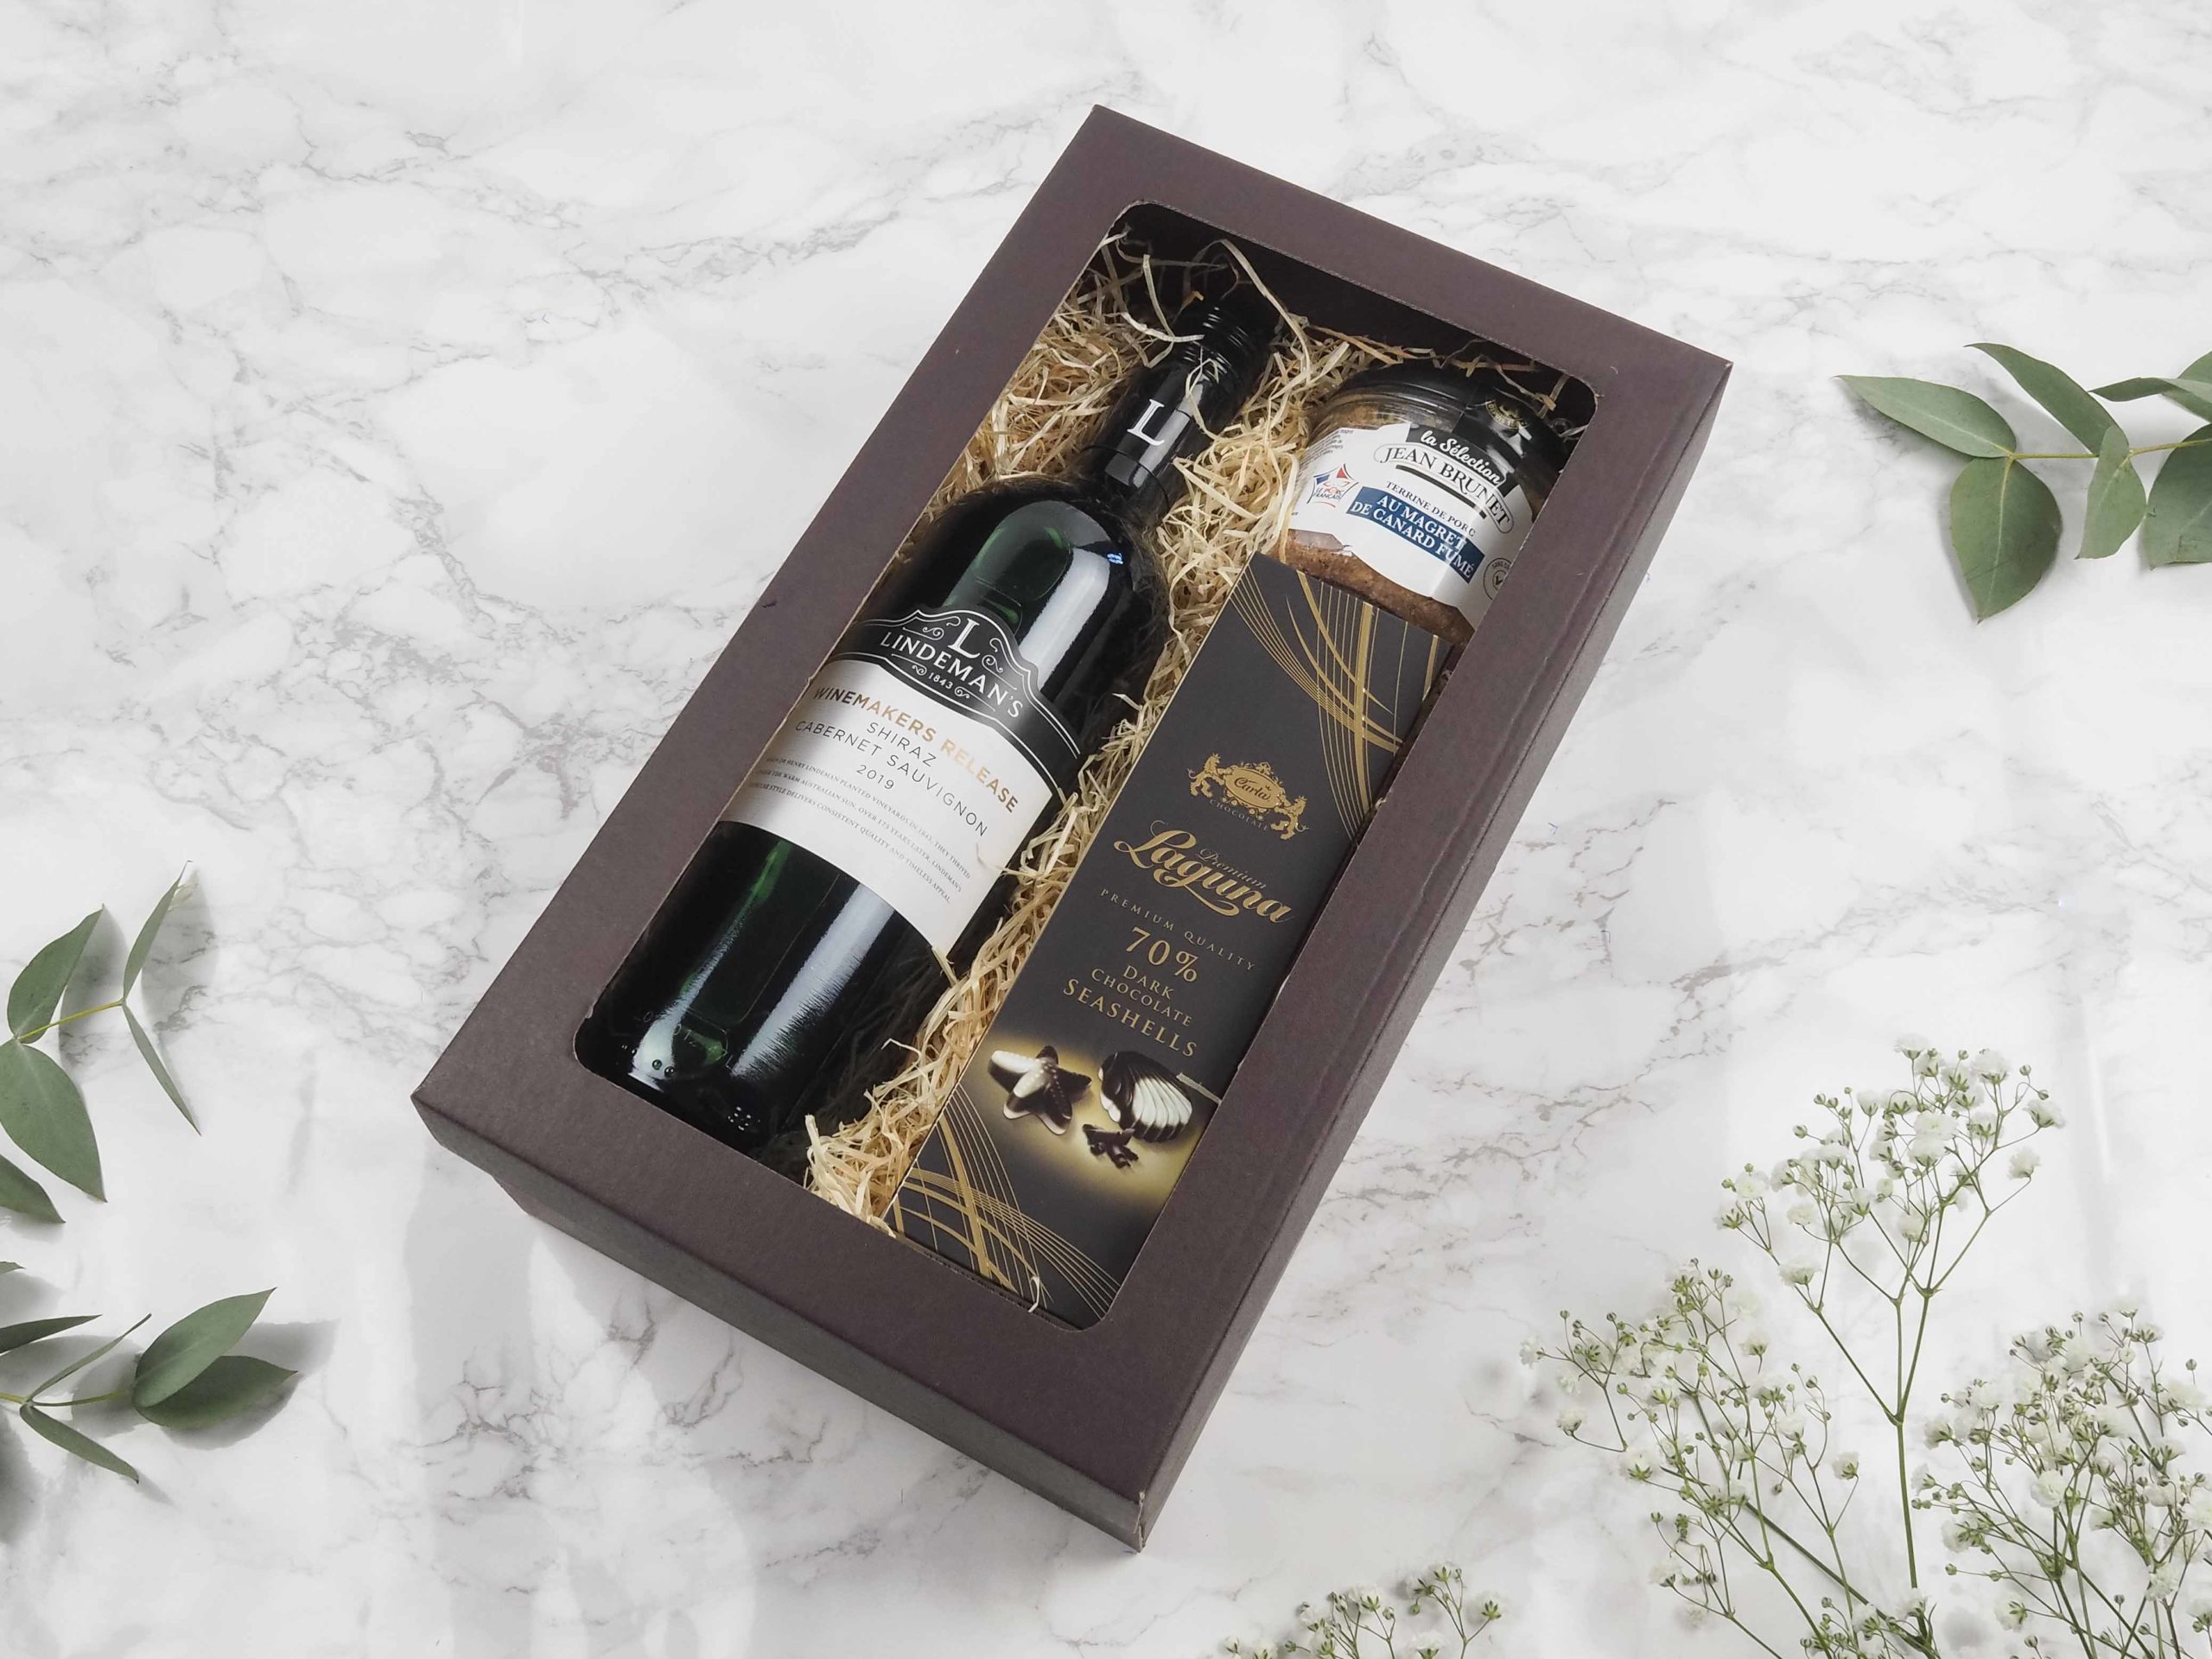 Dárková krabička v sobě ukrývá kvalitní australské červené víno, vepřová terina s uzenými kachními prsy a belgické pralinky. Všechny pochutiny jsou baleny v elegantní a ekologické papírové krabičce. Obdarujte s chutí malým degustačním zážitkem.